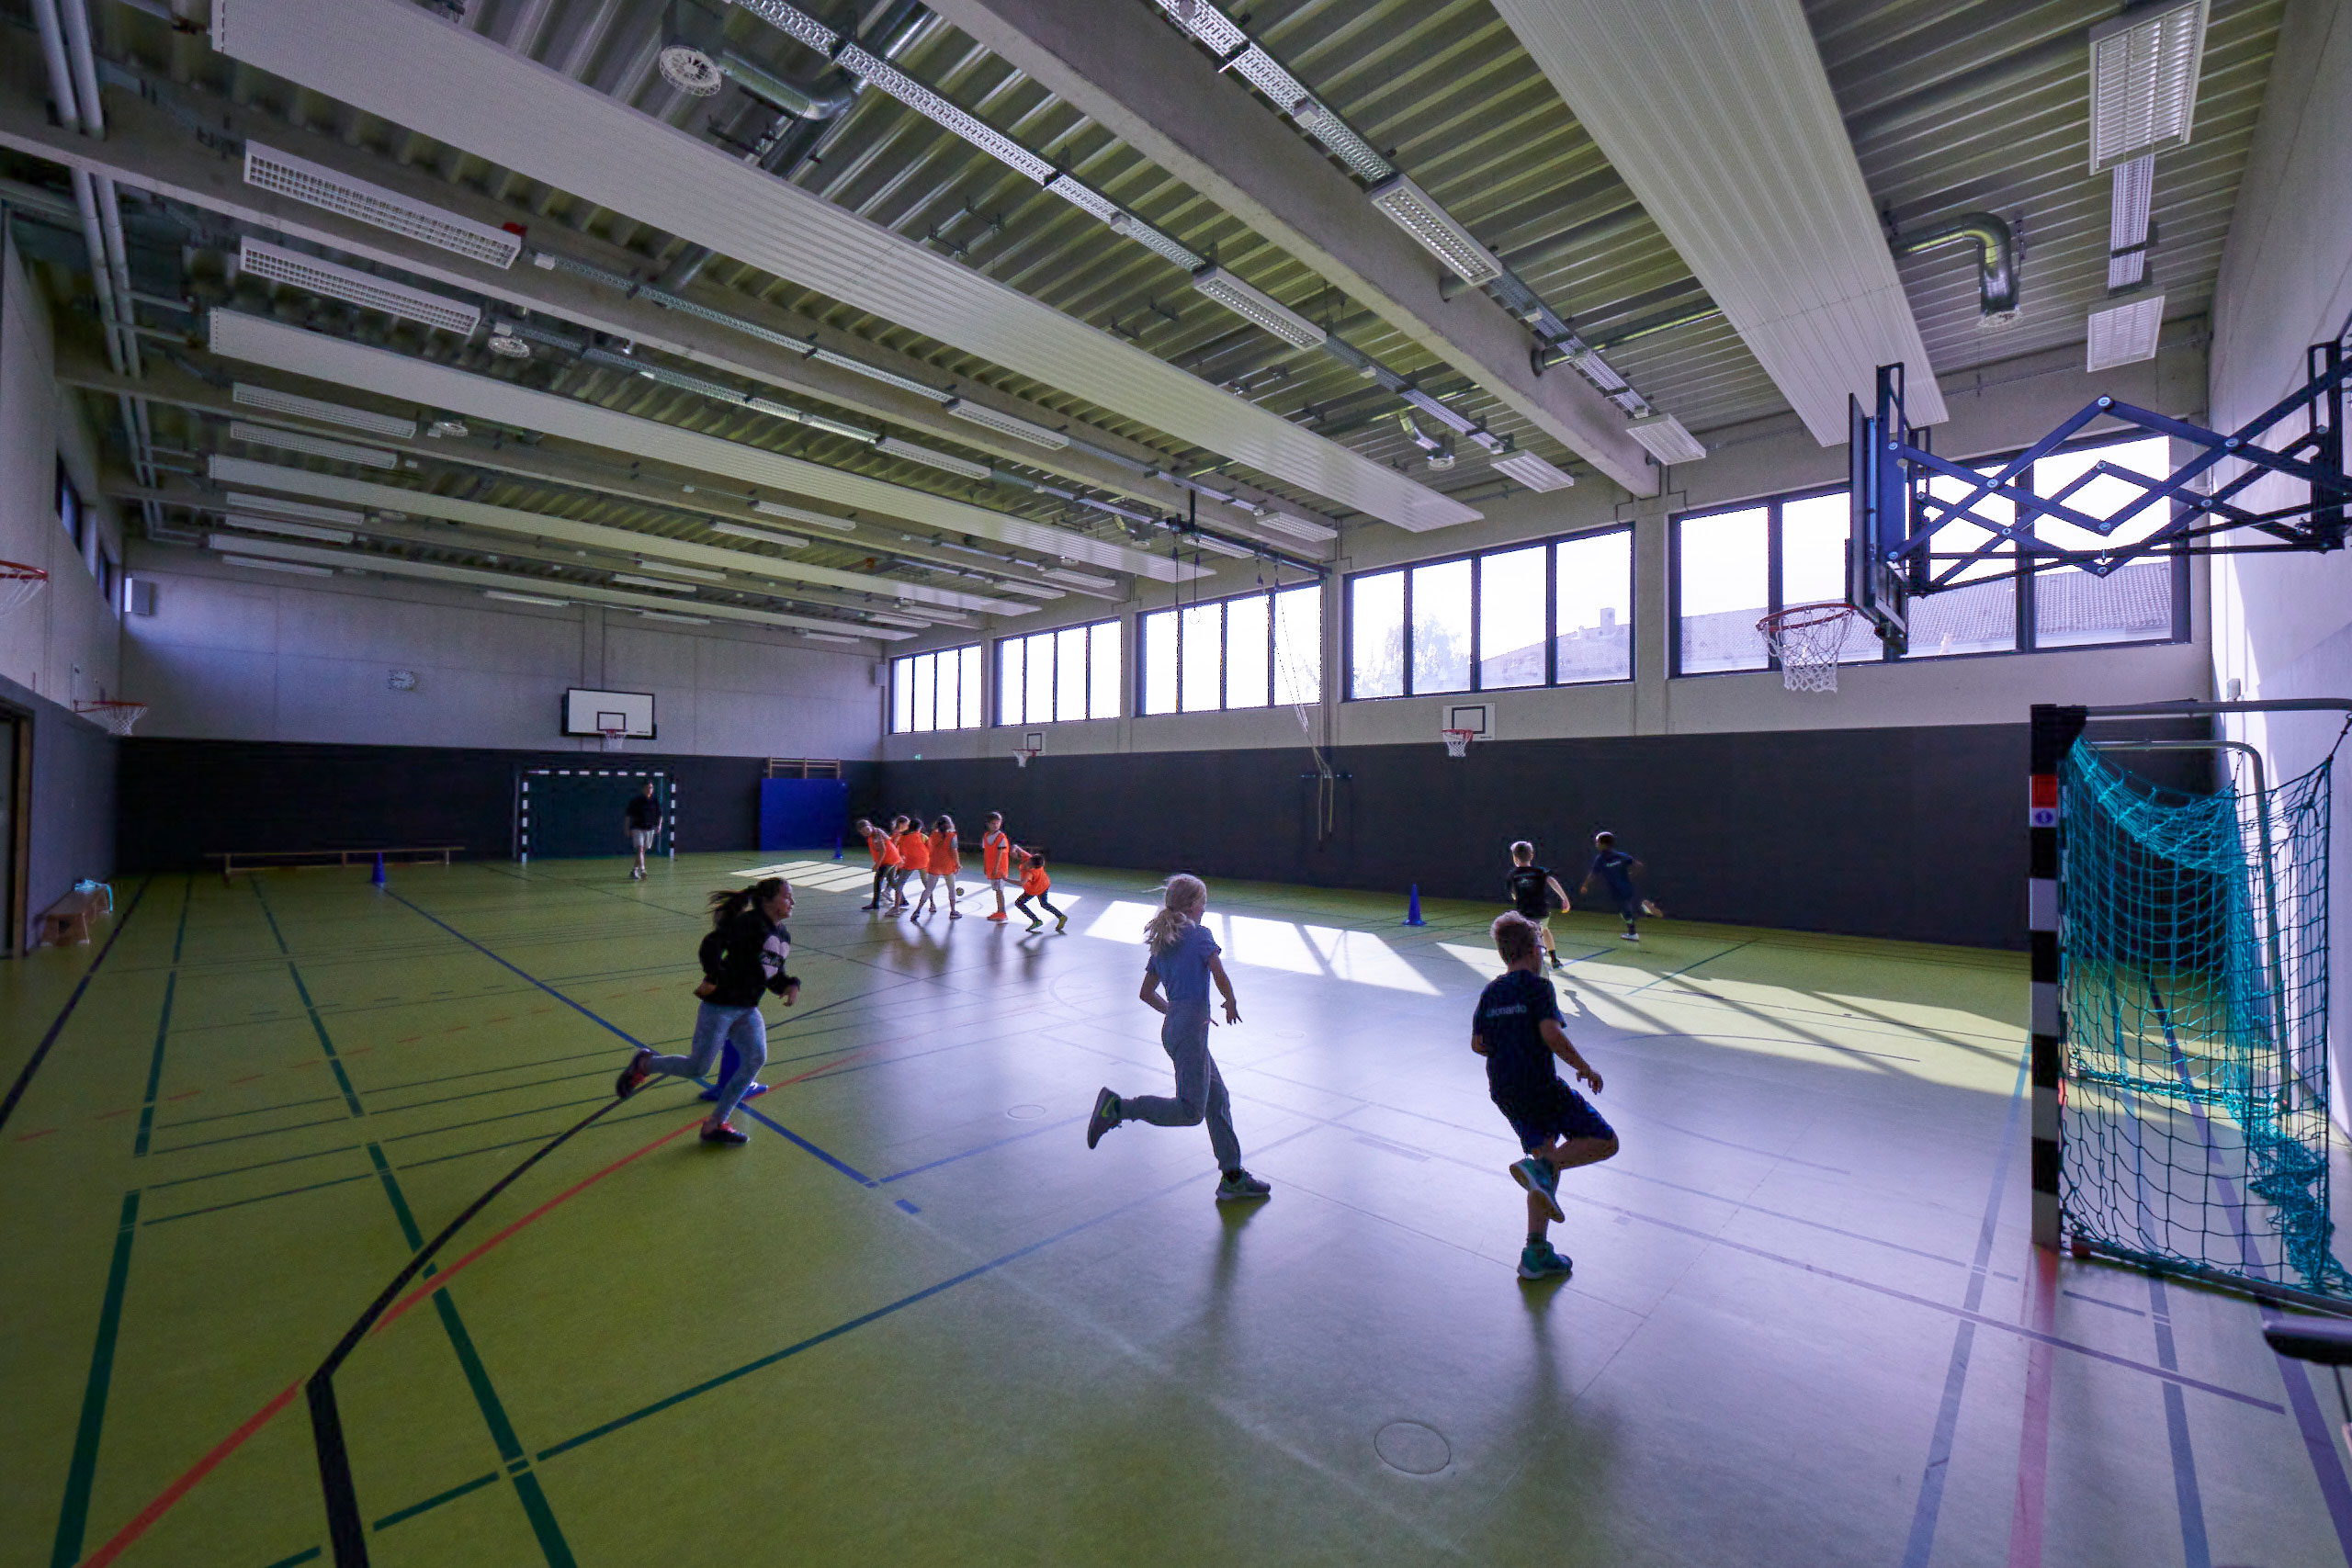 Schülerinnen und Schüler im Sportunterricht in der Turnhalle. Einige rennen durch die Halle.